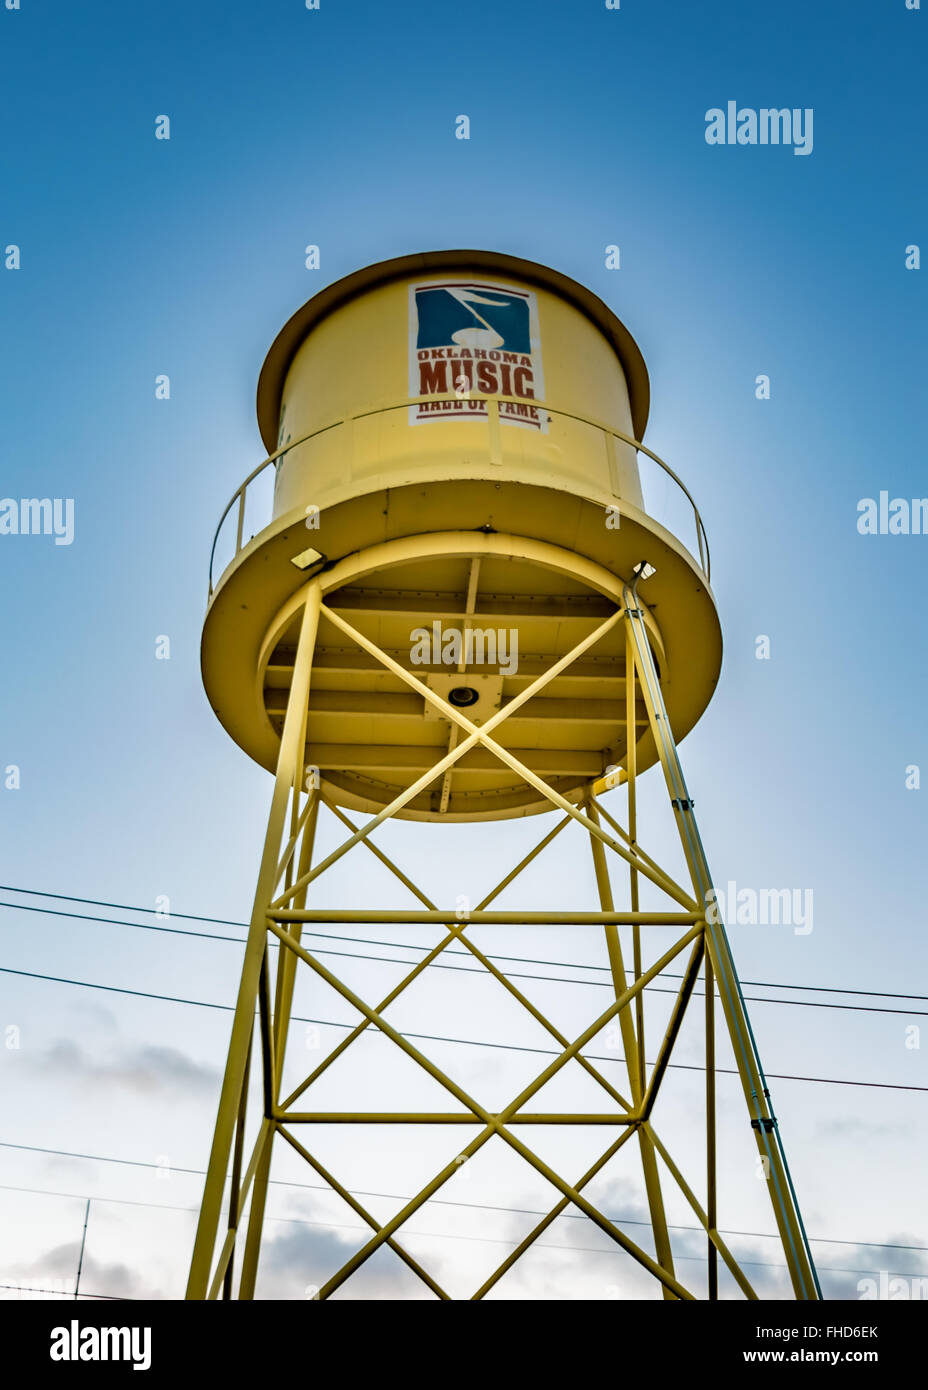 Wasserturm, der als einladendes Zeichen und Wahrzeichen von Oklahoma Music Hall of Fame in Muskogee dient Stockfoto